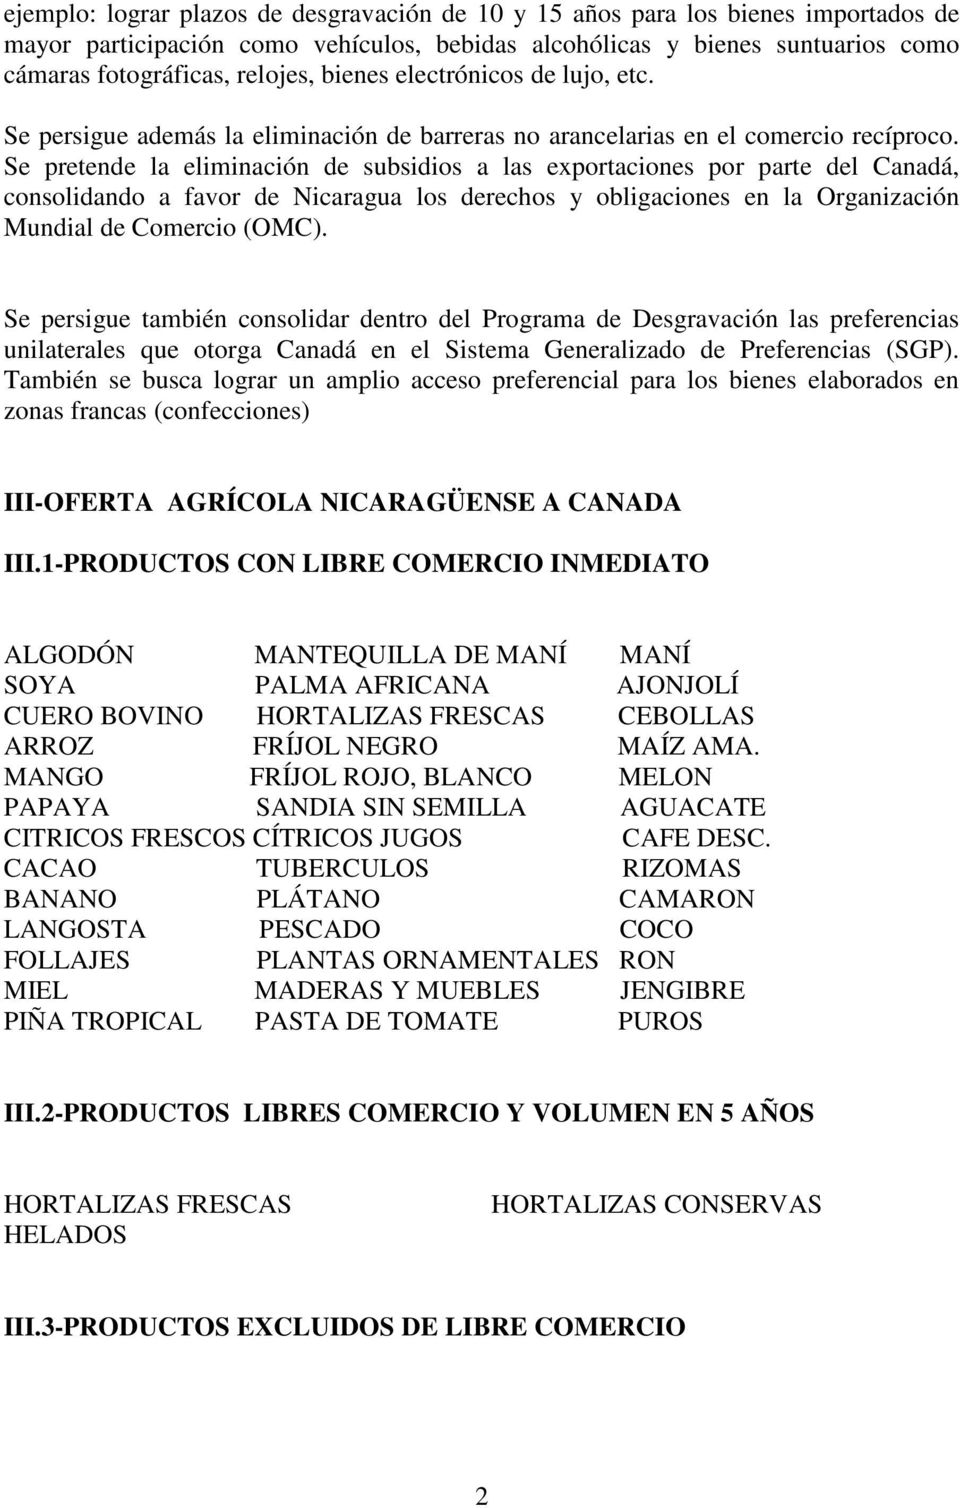 Se pretende la eliminación de subsidios a las exportaciones por parte del Canadá, consolidando a favor de Nicaragua los derechos y obligaciones en la Organización Mundial de Comercio (OMC).